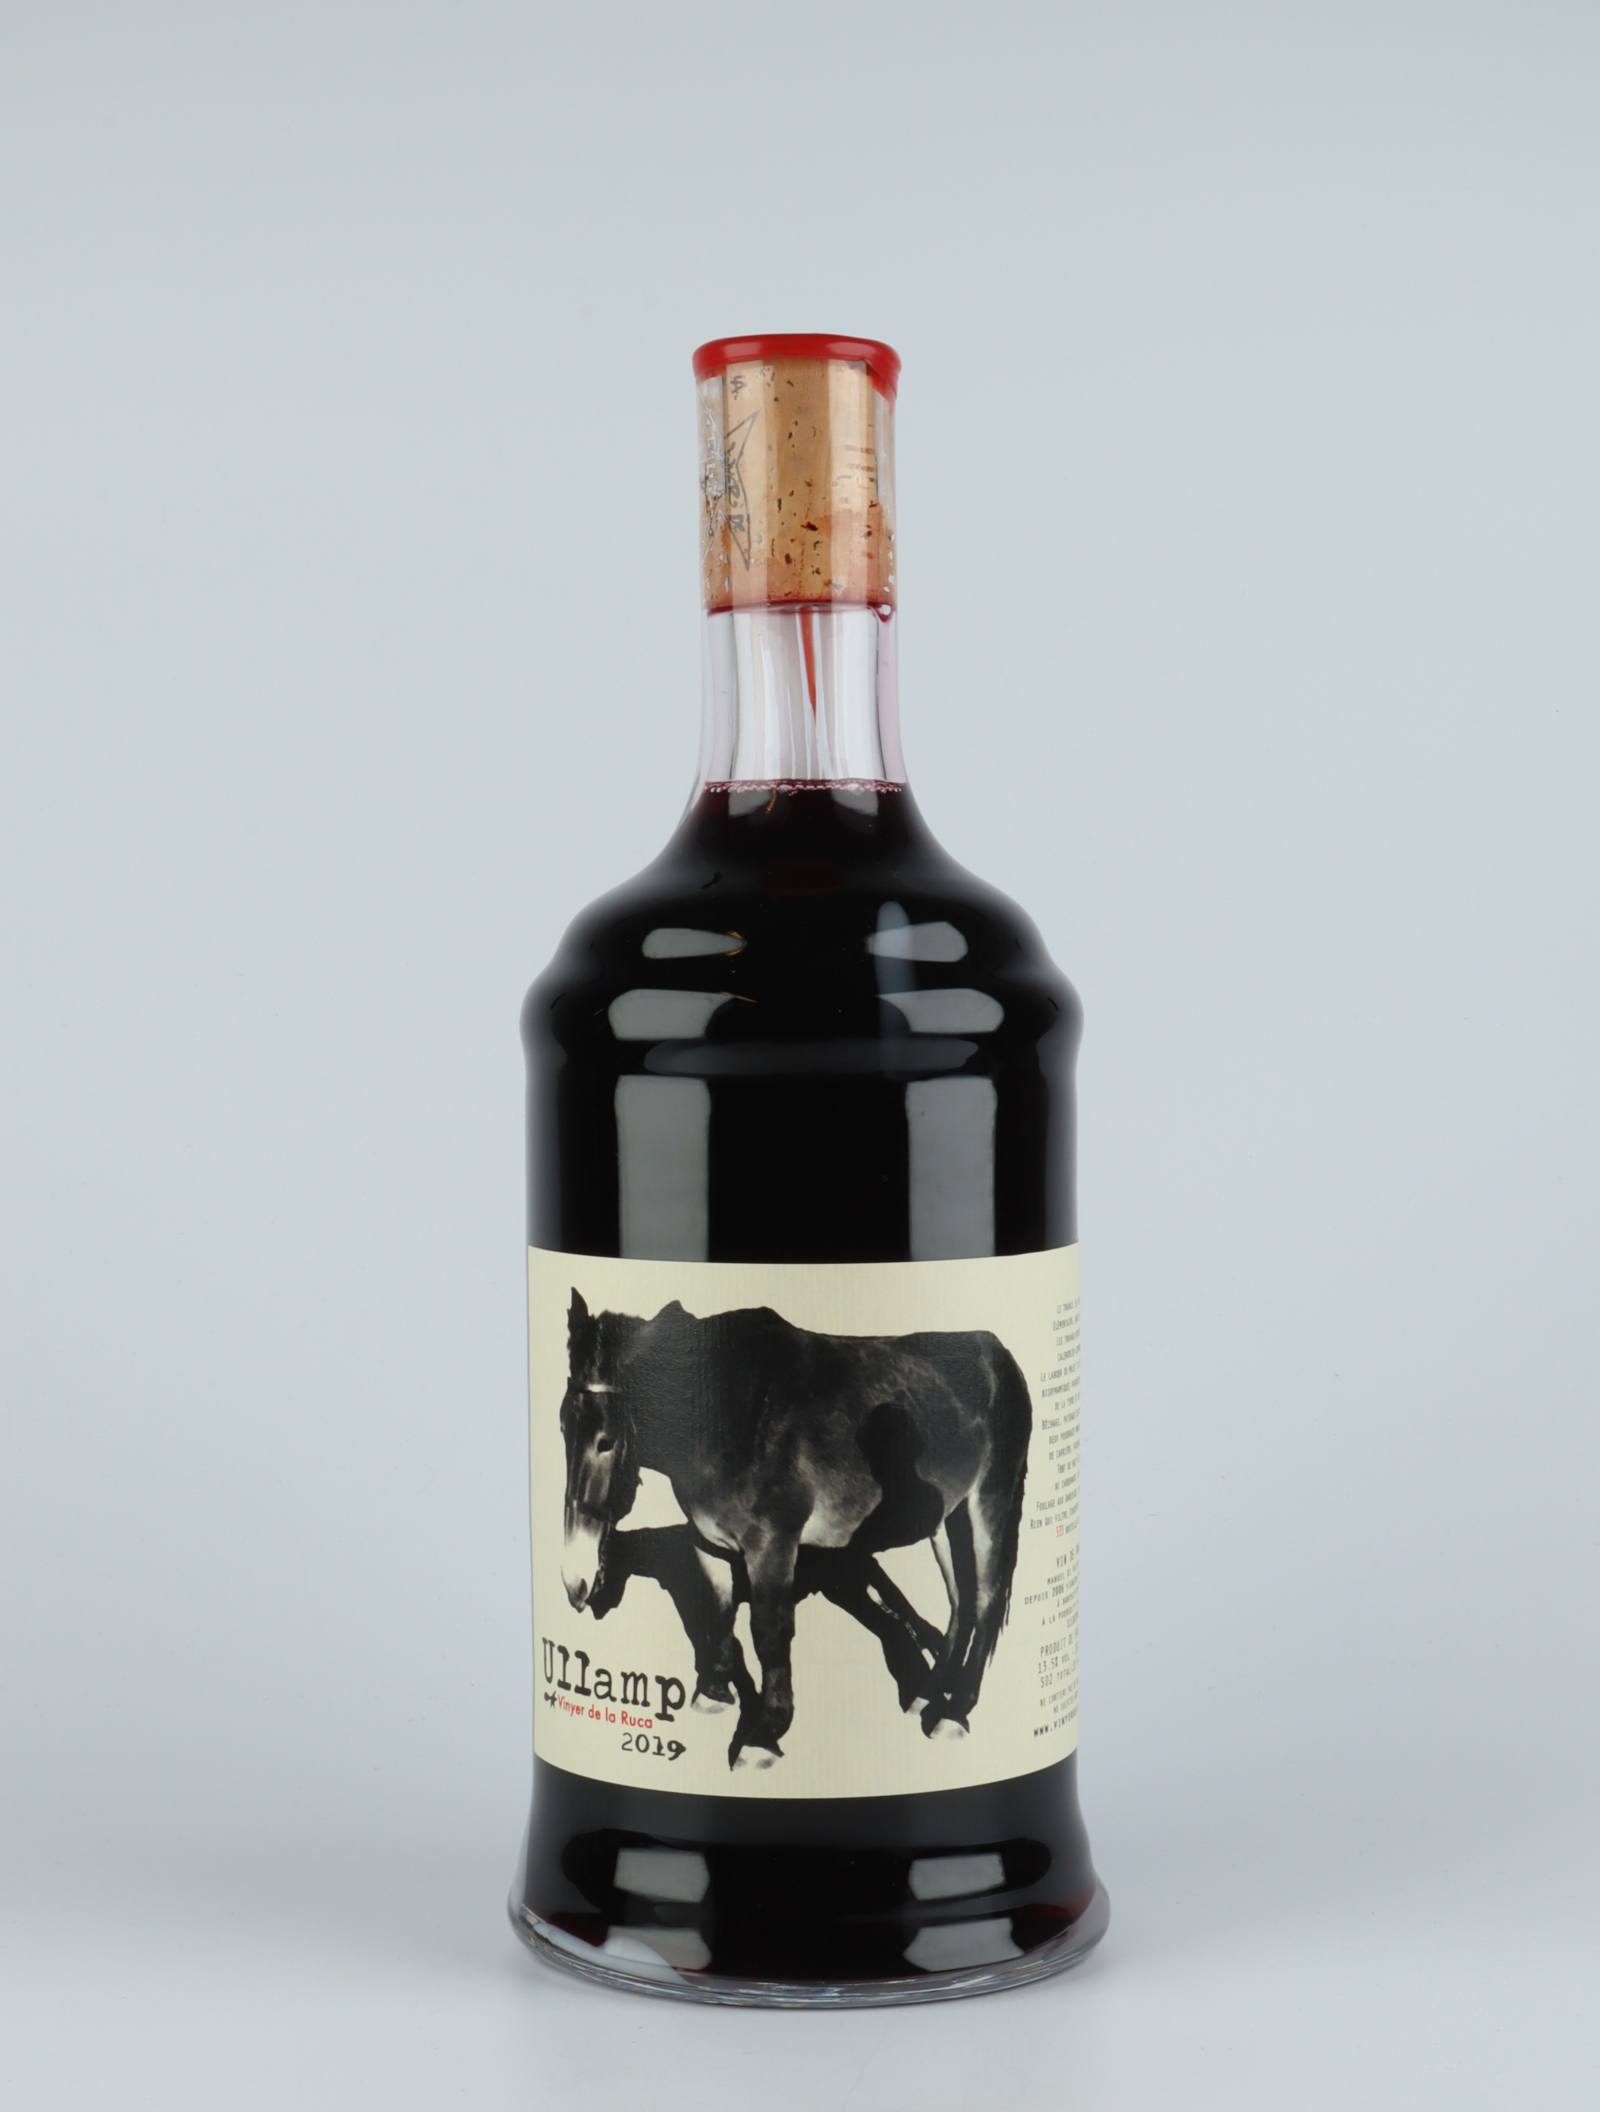 En flaske 2019 Ullamp Rødvin fra Vinyer de la Ruca, Rousillon i Frankrig